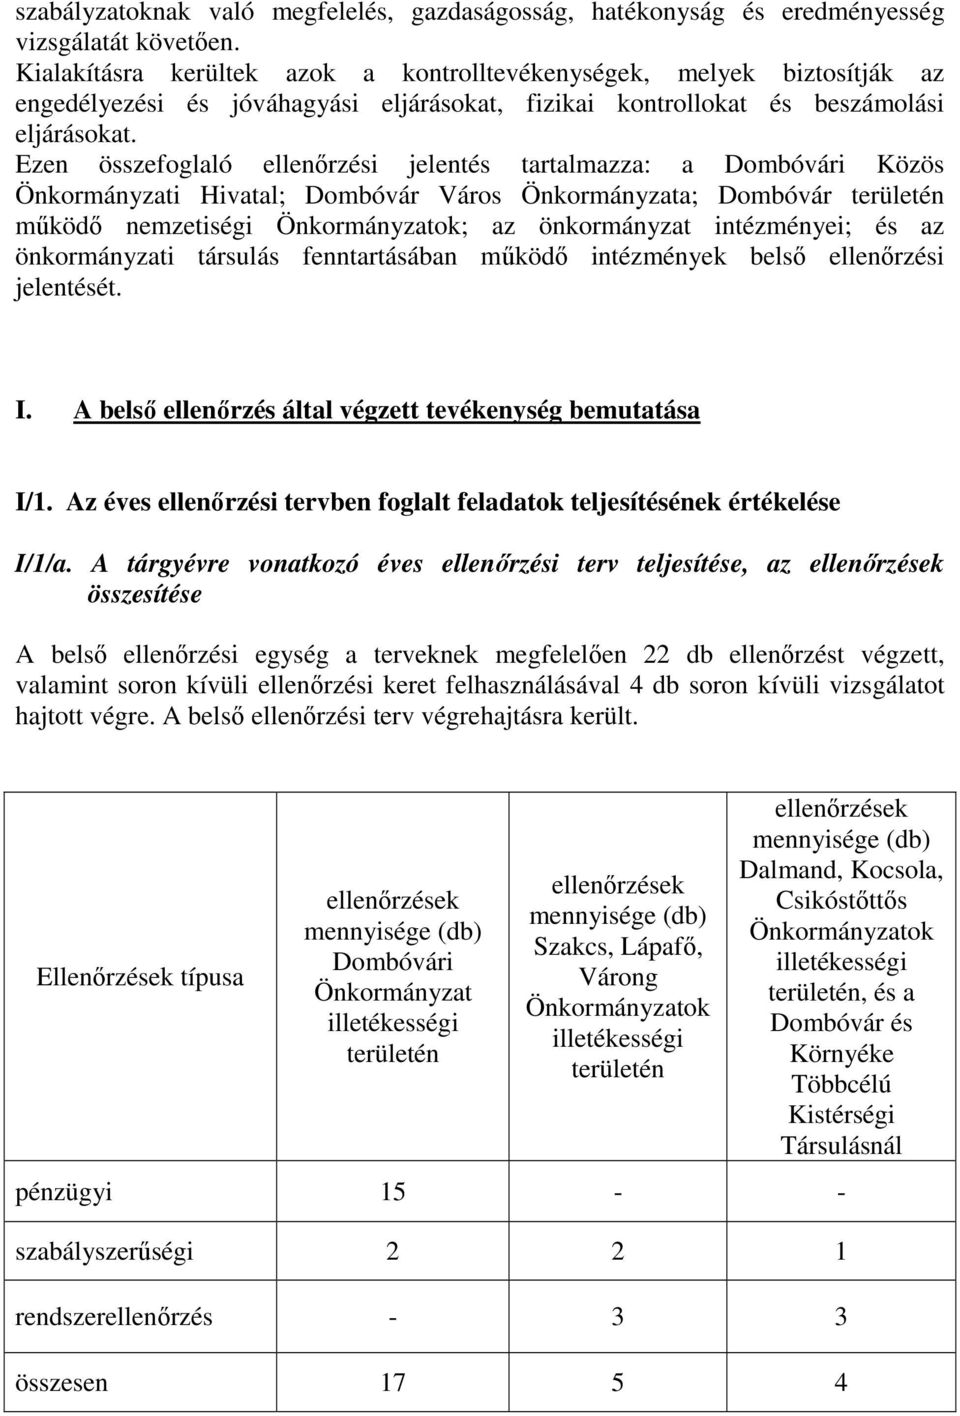 Ezen összefoglaló ellenőrzési jelentés tartalmazza: a Dombóvári Közös Önkormányzati Hivatal; Dombóvár Város Önkormányzata; Dombóvár területén működő nemzetiségi Önkormányzatok; az önkormányzat